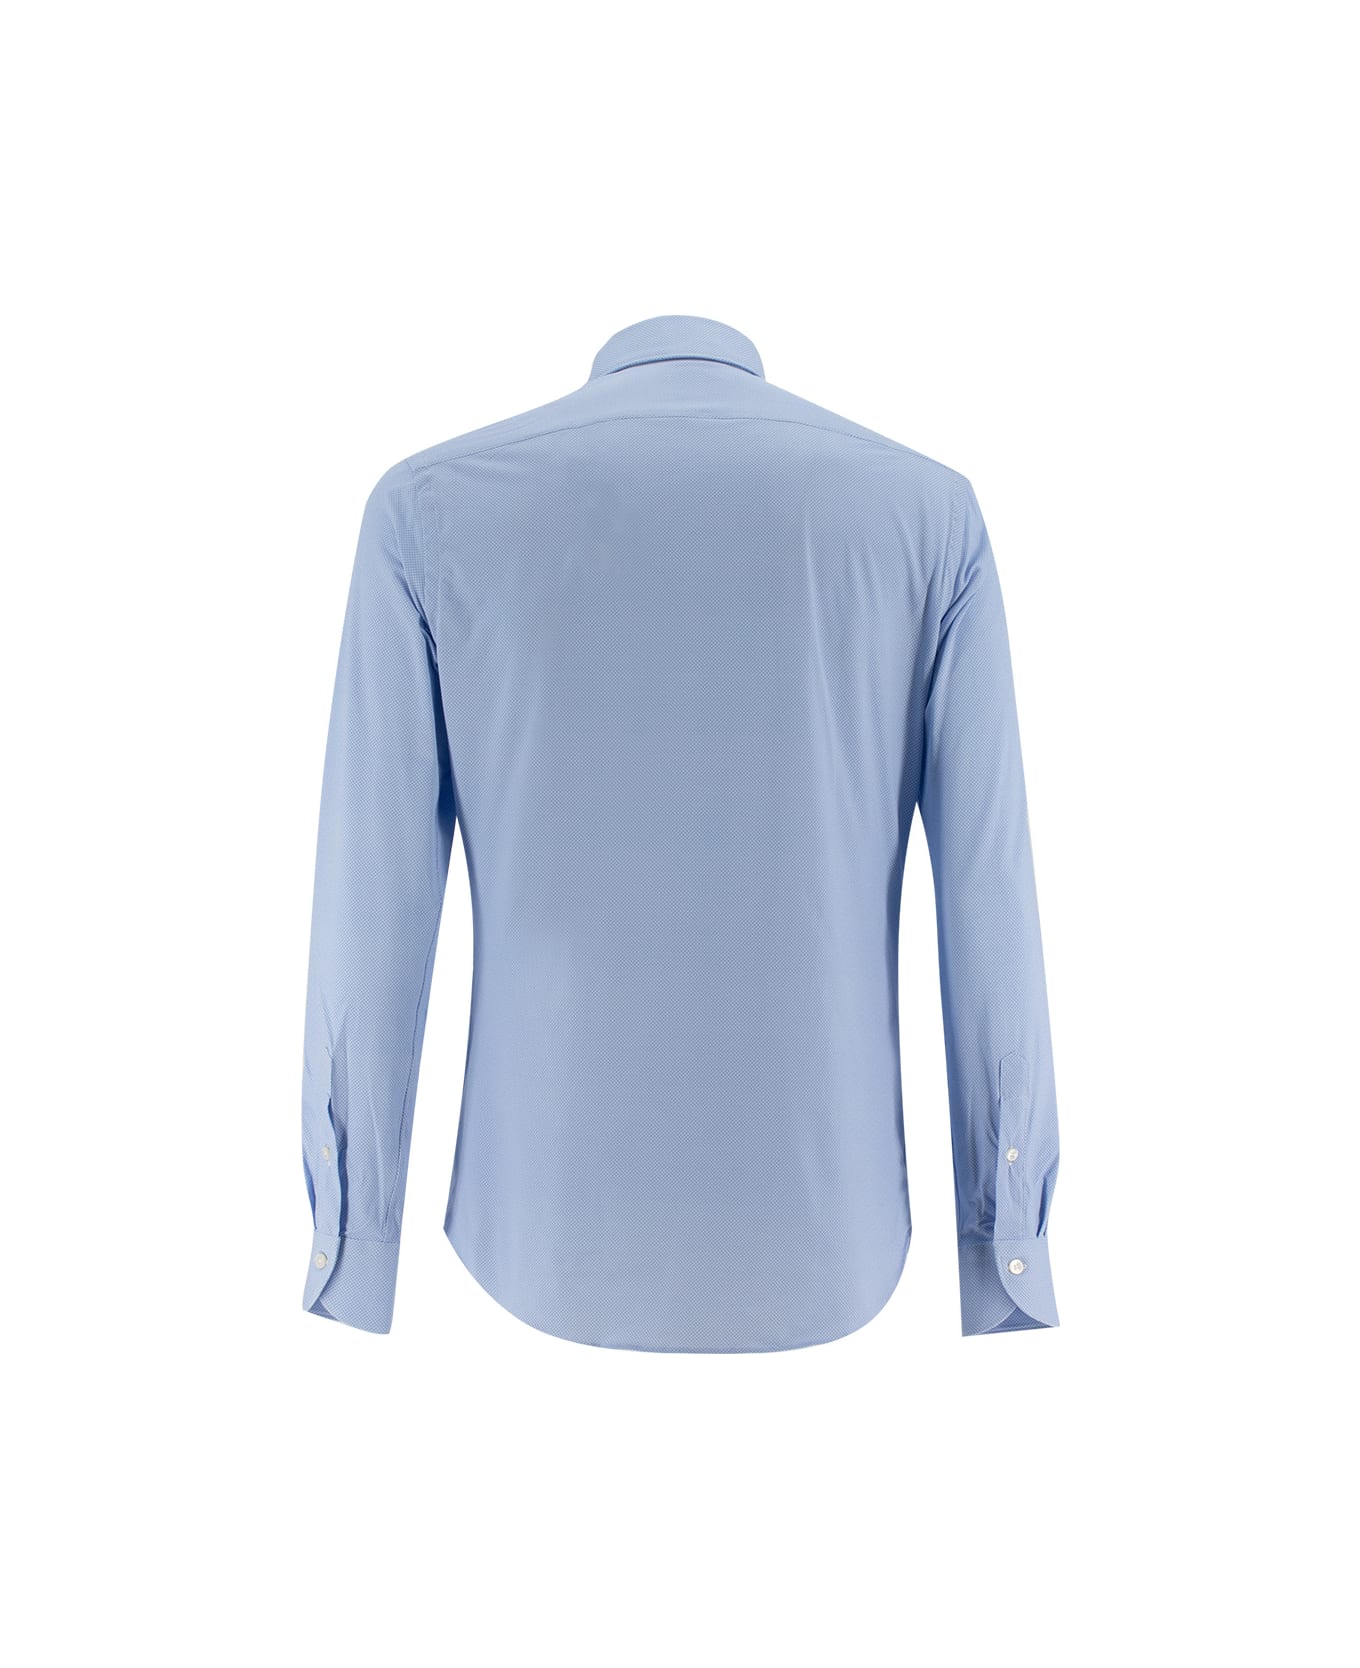 Xacus Shirt - BLUE